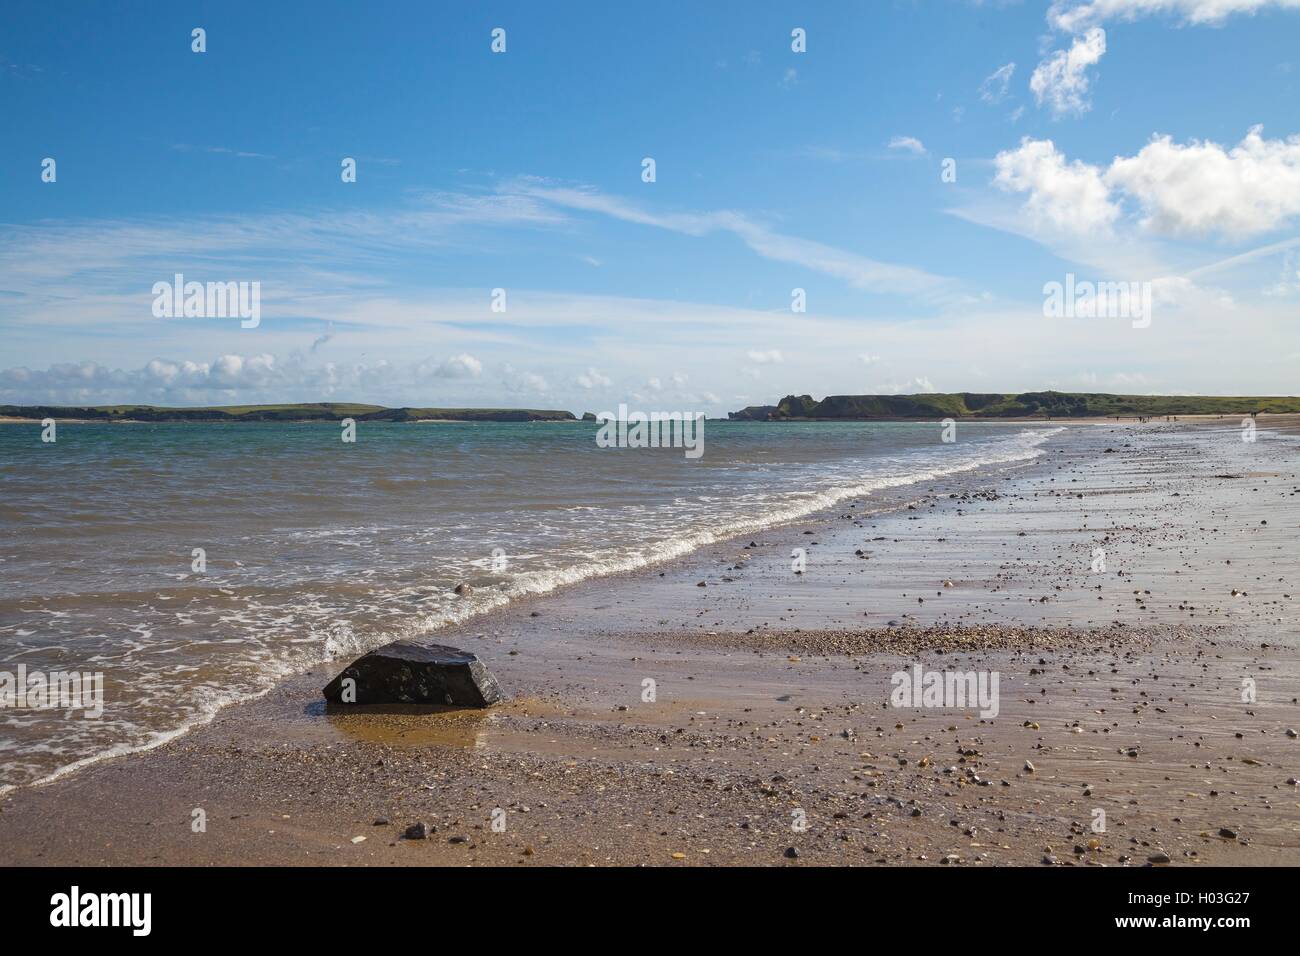 La plage de Tenby, Pays de Galles, Grande-Bretagne Banque D'Images